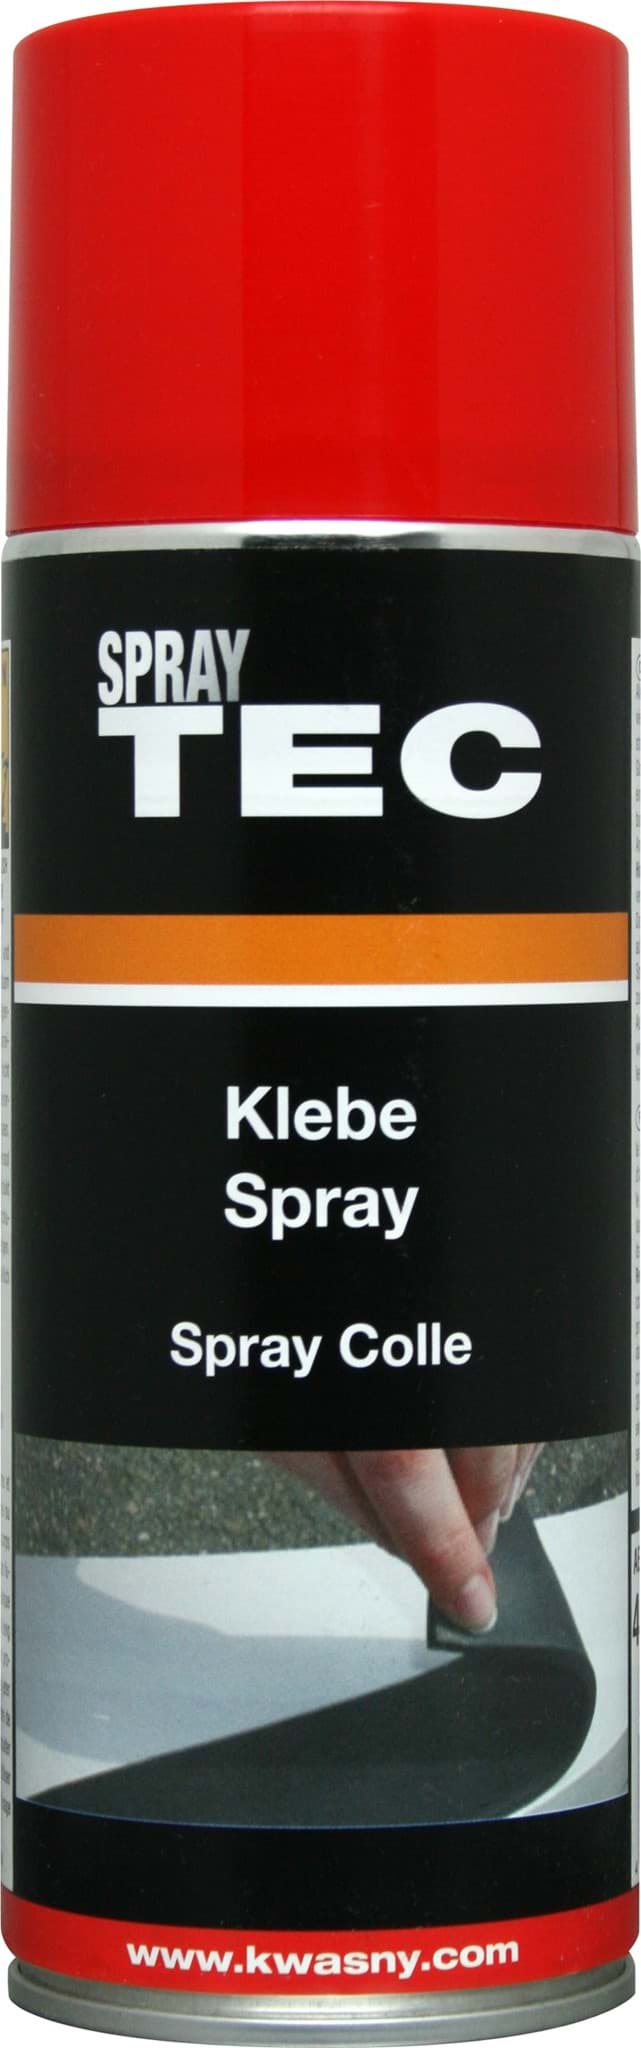 Afbeelding van SprayTec Klebe-Spray 400ml 235050